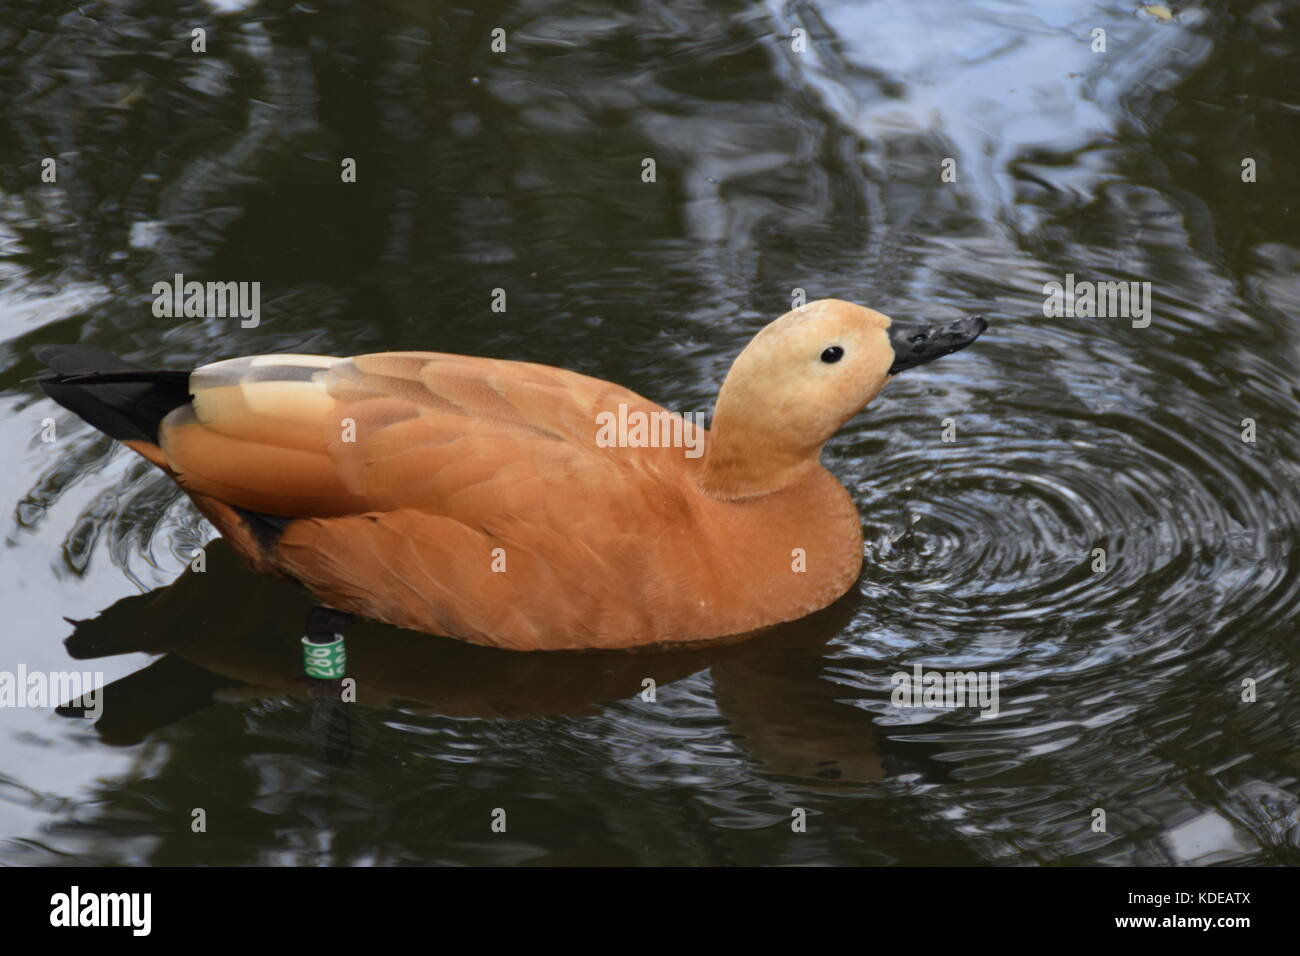 Duck marrone chiaro nel lago - close up - tadorna feruginea - rubicondo shwelduck piumaggio con una più pallida di testa - uccello sacro - uccelli acquatici Foto Stock